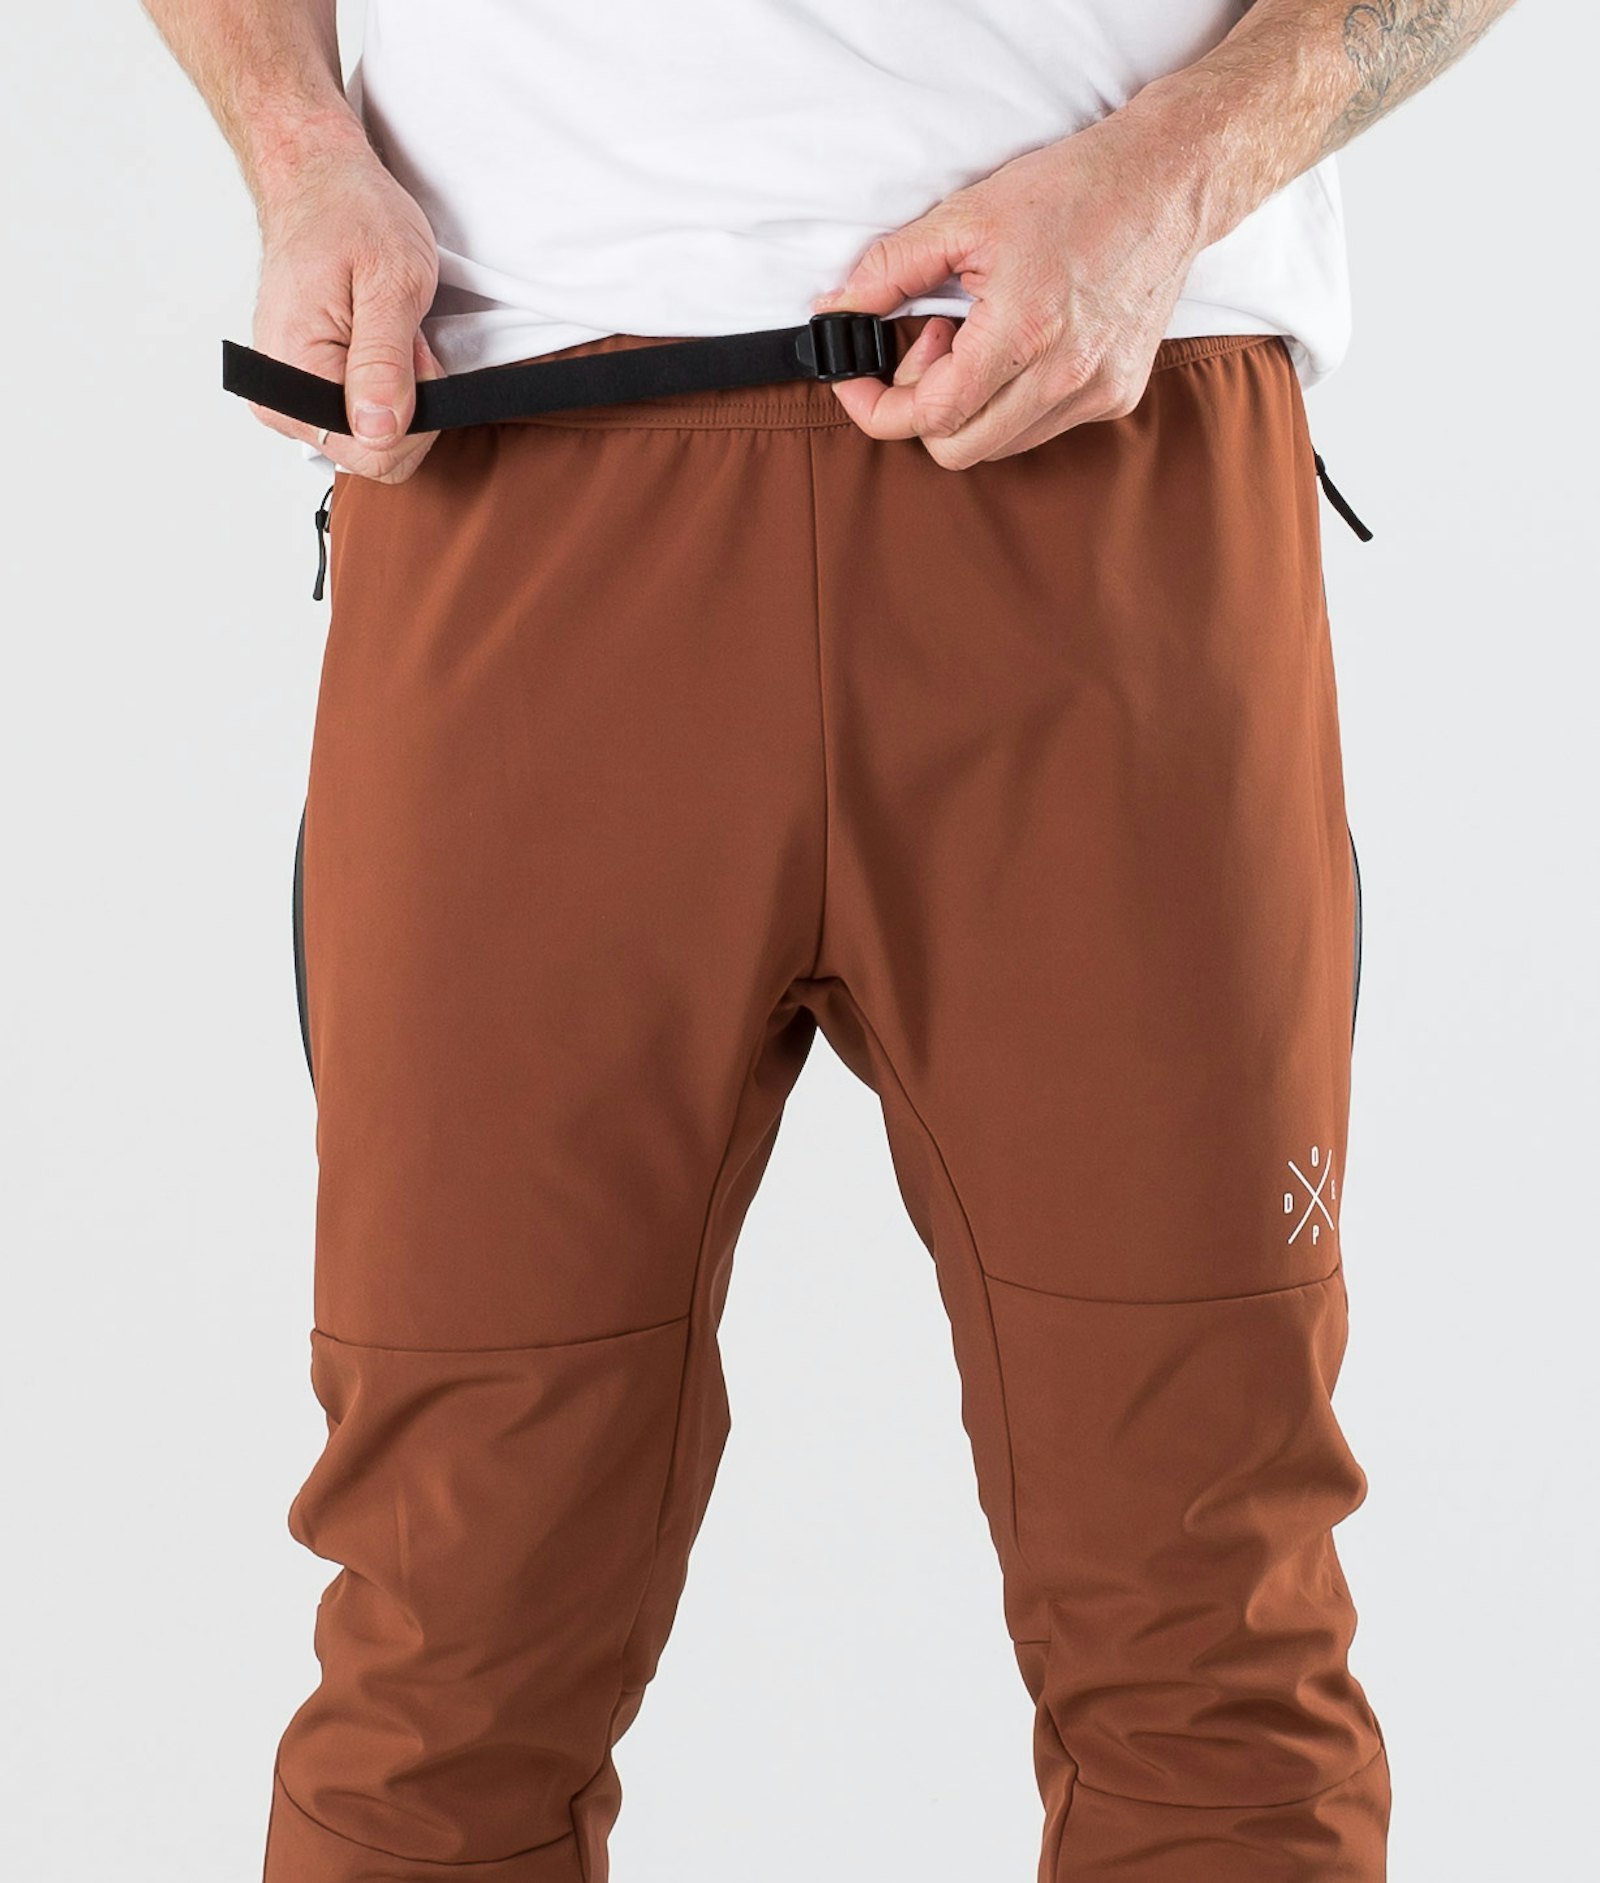 Dope Rambler Pantalones Outdoor Hombre Adobe